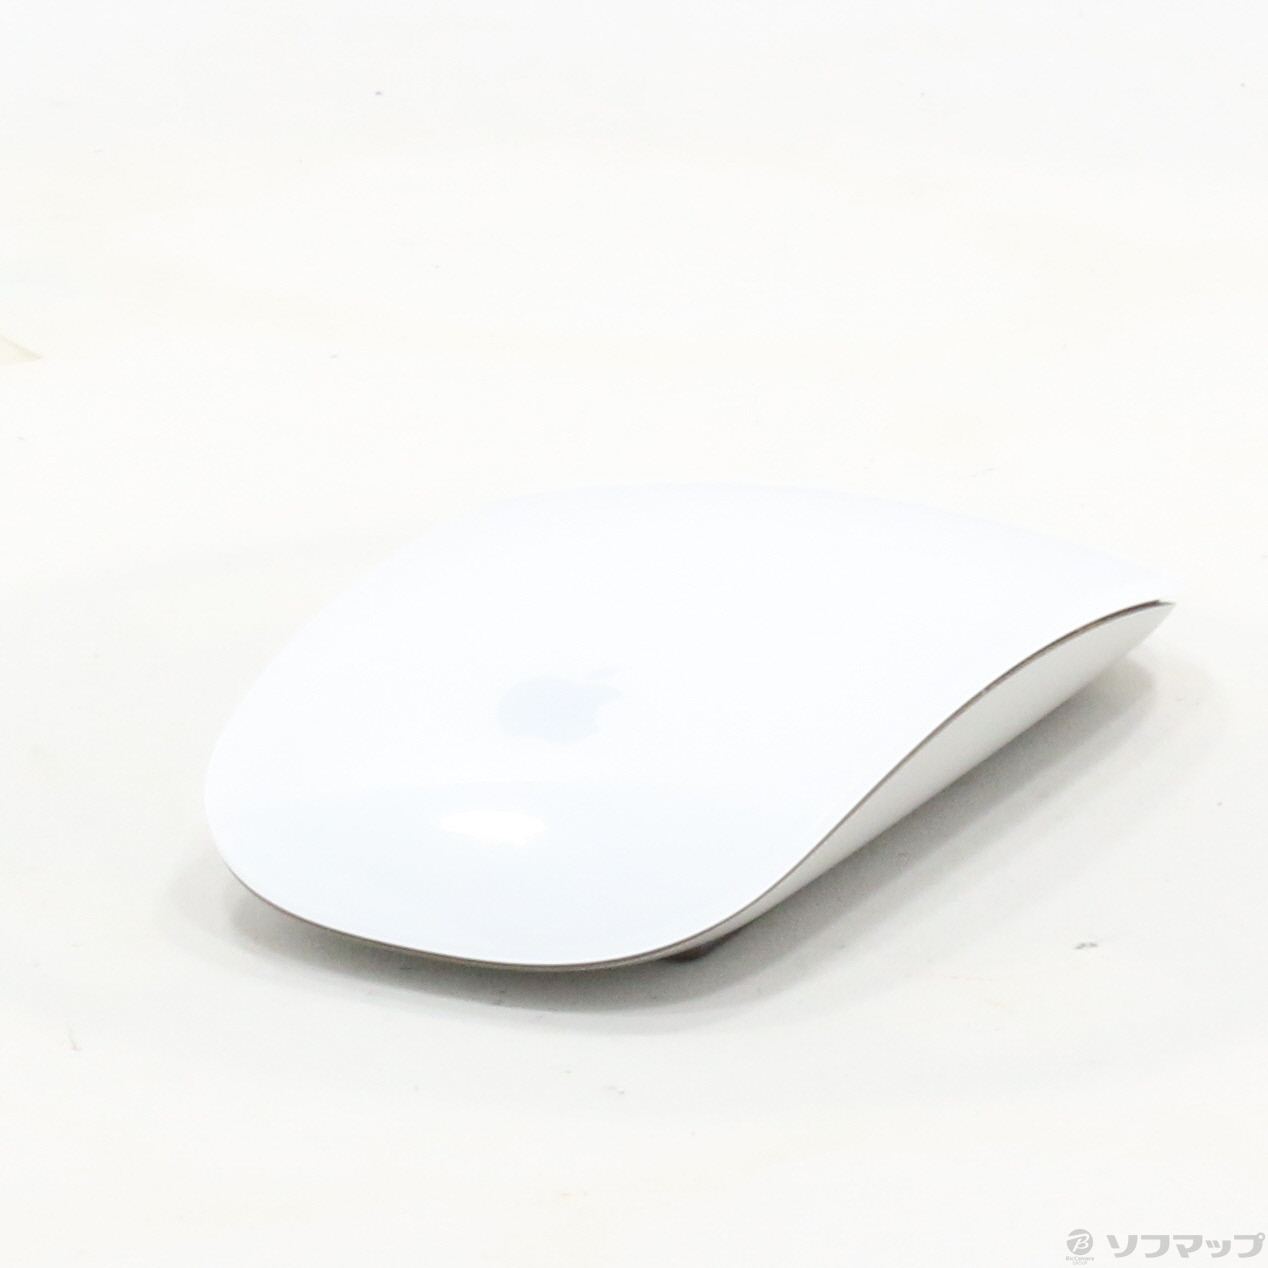 Apple Magic Mouse 2 MLA02J/A シルバー